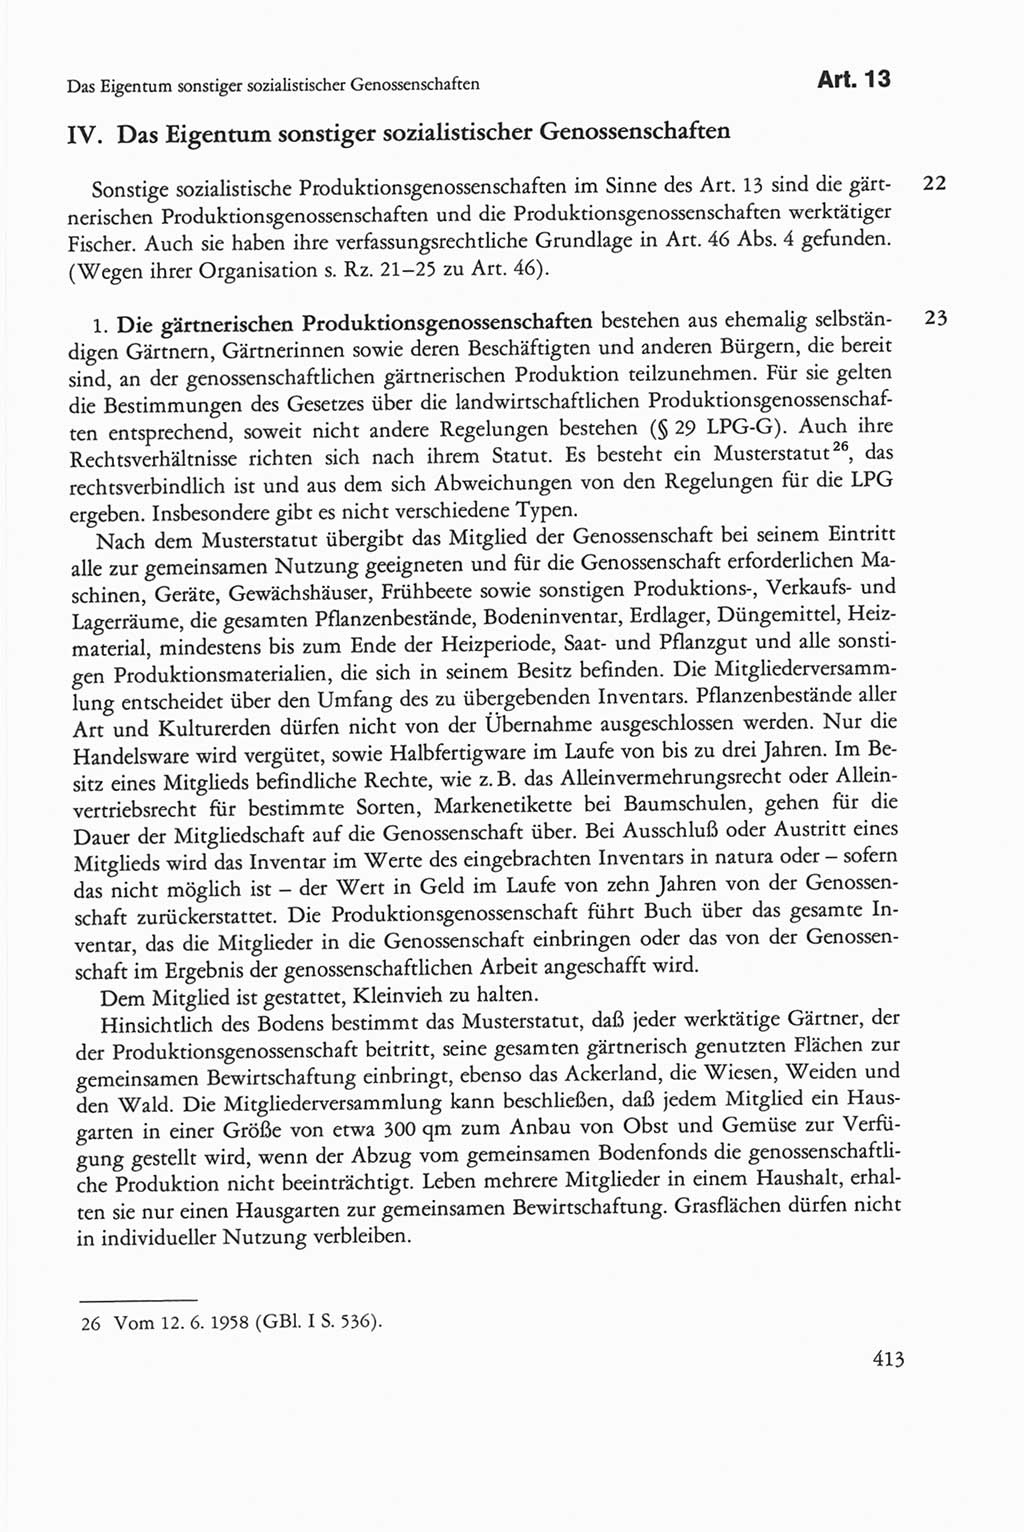 Die sozialistische Verfassung der Deutschen Demokratischen Republik (DDR), Kommentar mit einem Nachtrag 1997, Seite 413 (Soz. Verf. DDR Komm. Nachtr. 1997, S. 413)